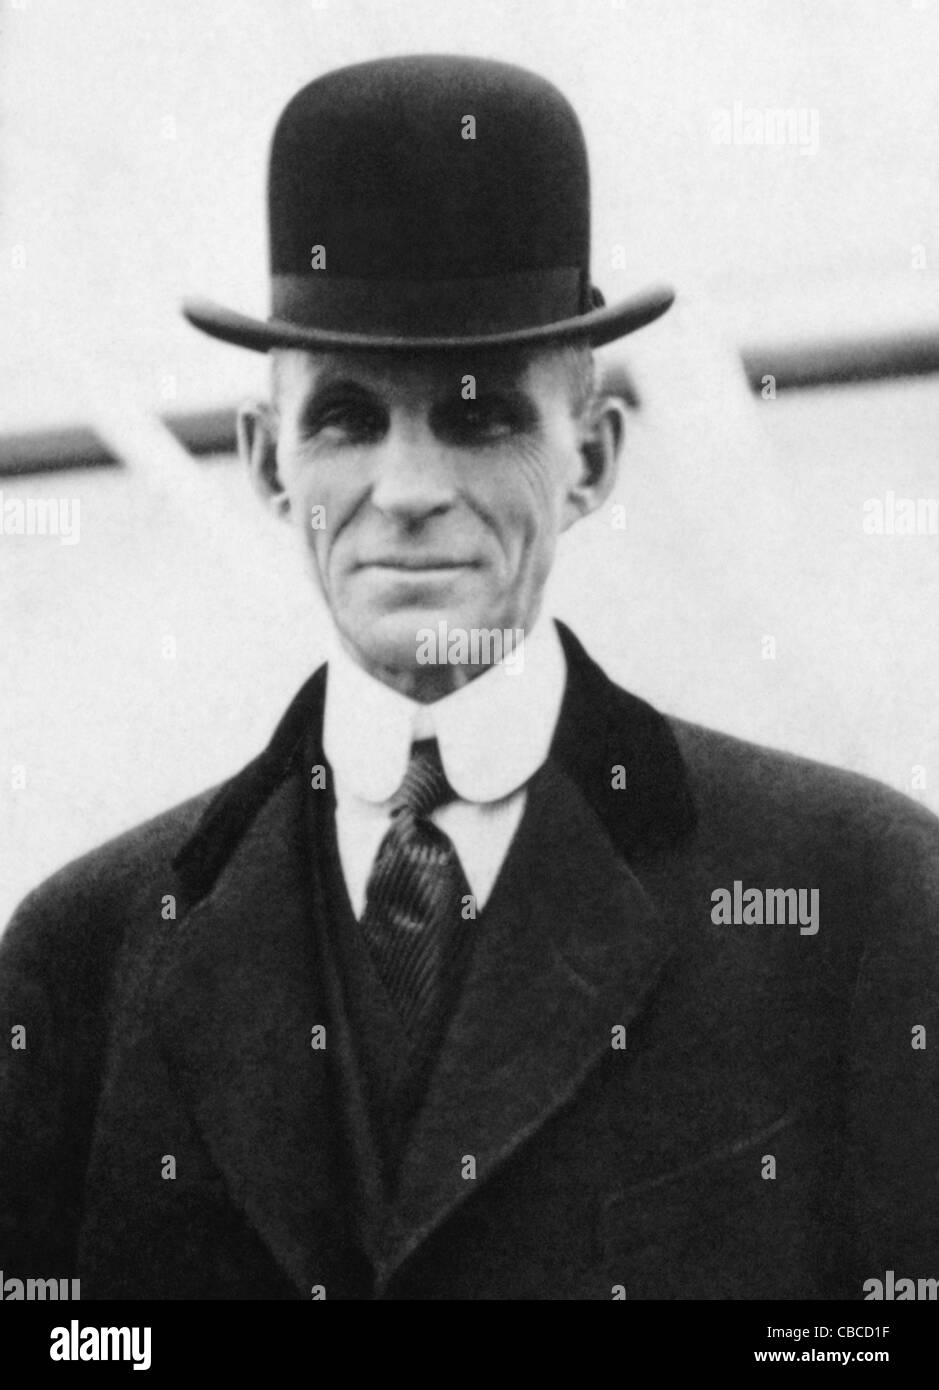 Foto d'epoca dell'industriale americano e magnate d'affari Henry Ford (1863 – 1947) – fondatore della Ford Motor Company. Foto di Bain News Service circa 1916. Foto Stock